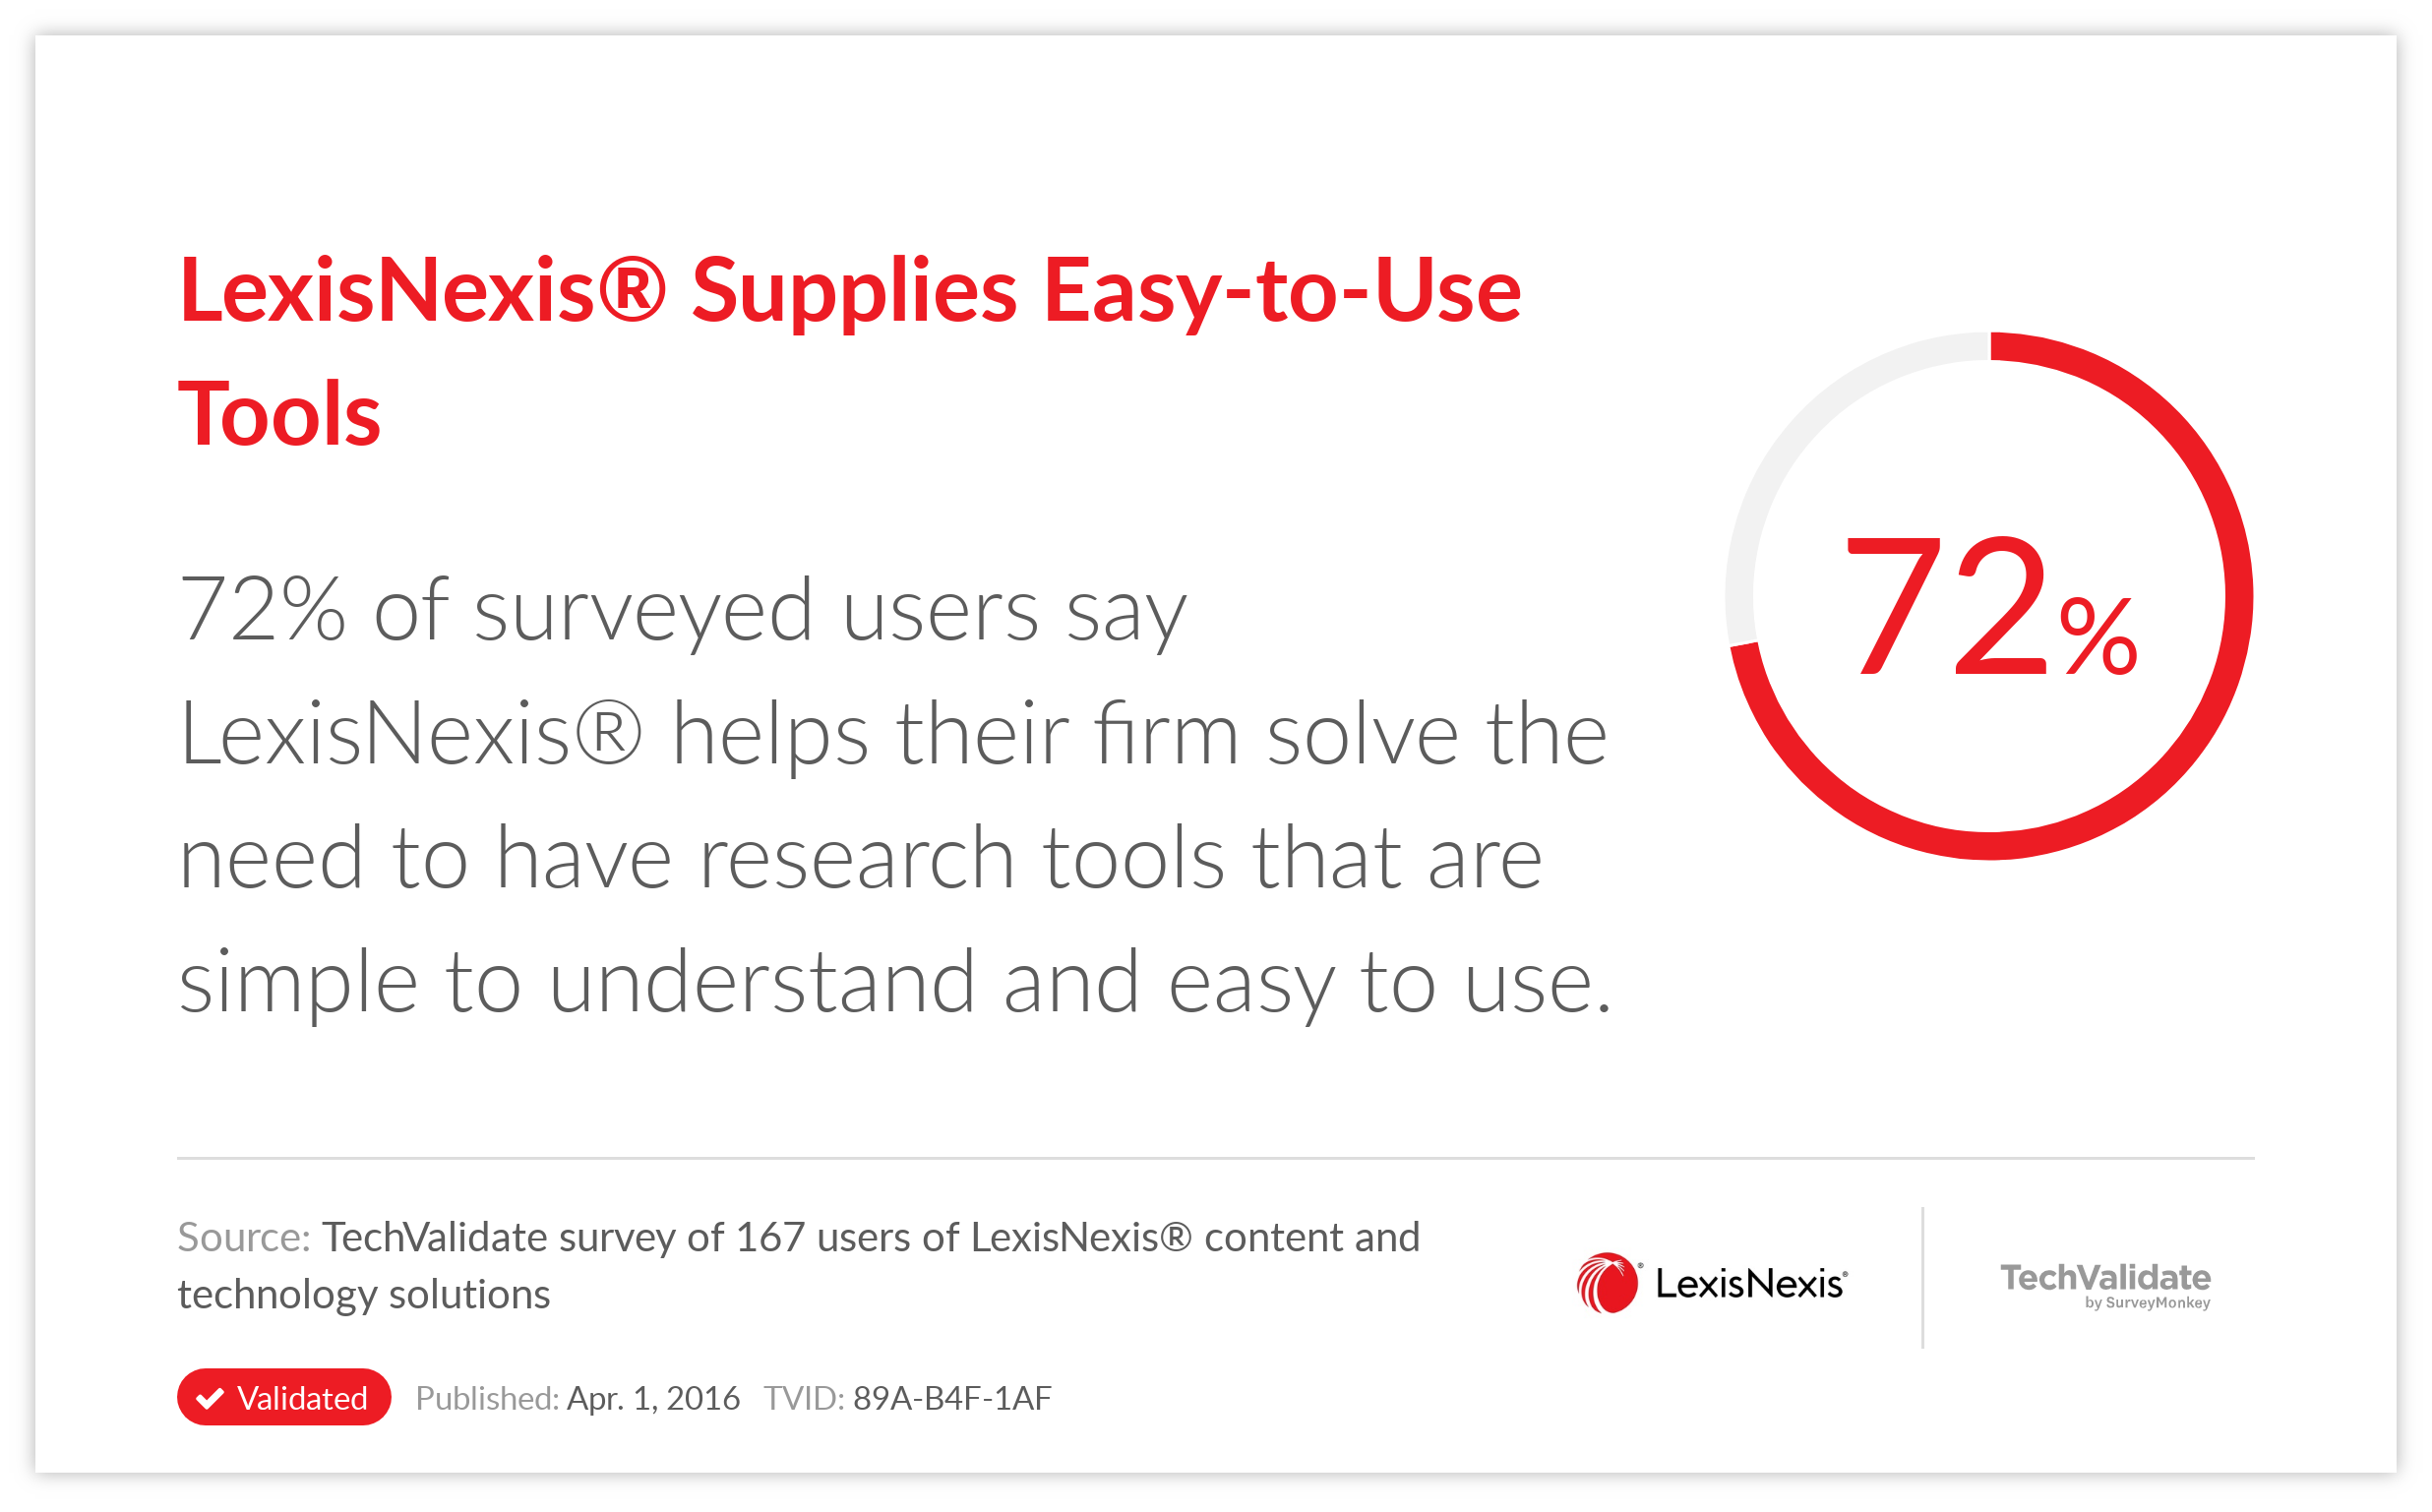 LexisNexis® Supplies Easy-to-Use Tools